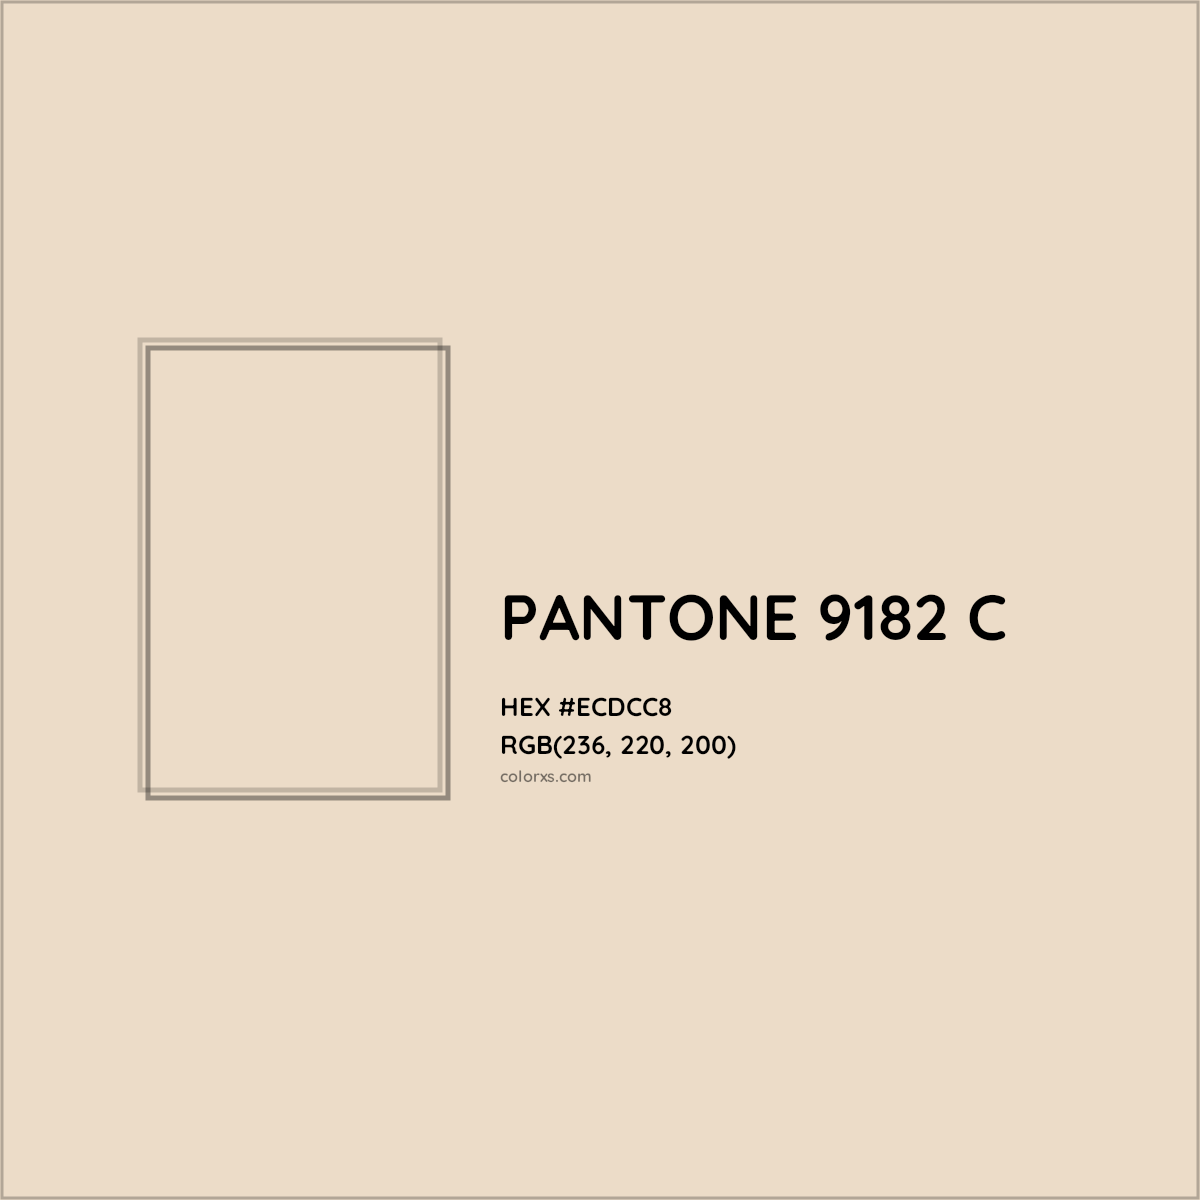 HEX #ECDCC8 PANTONE 9182 C CMS Pantone PMS - Color Code